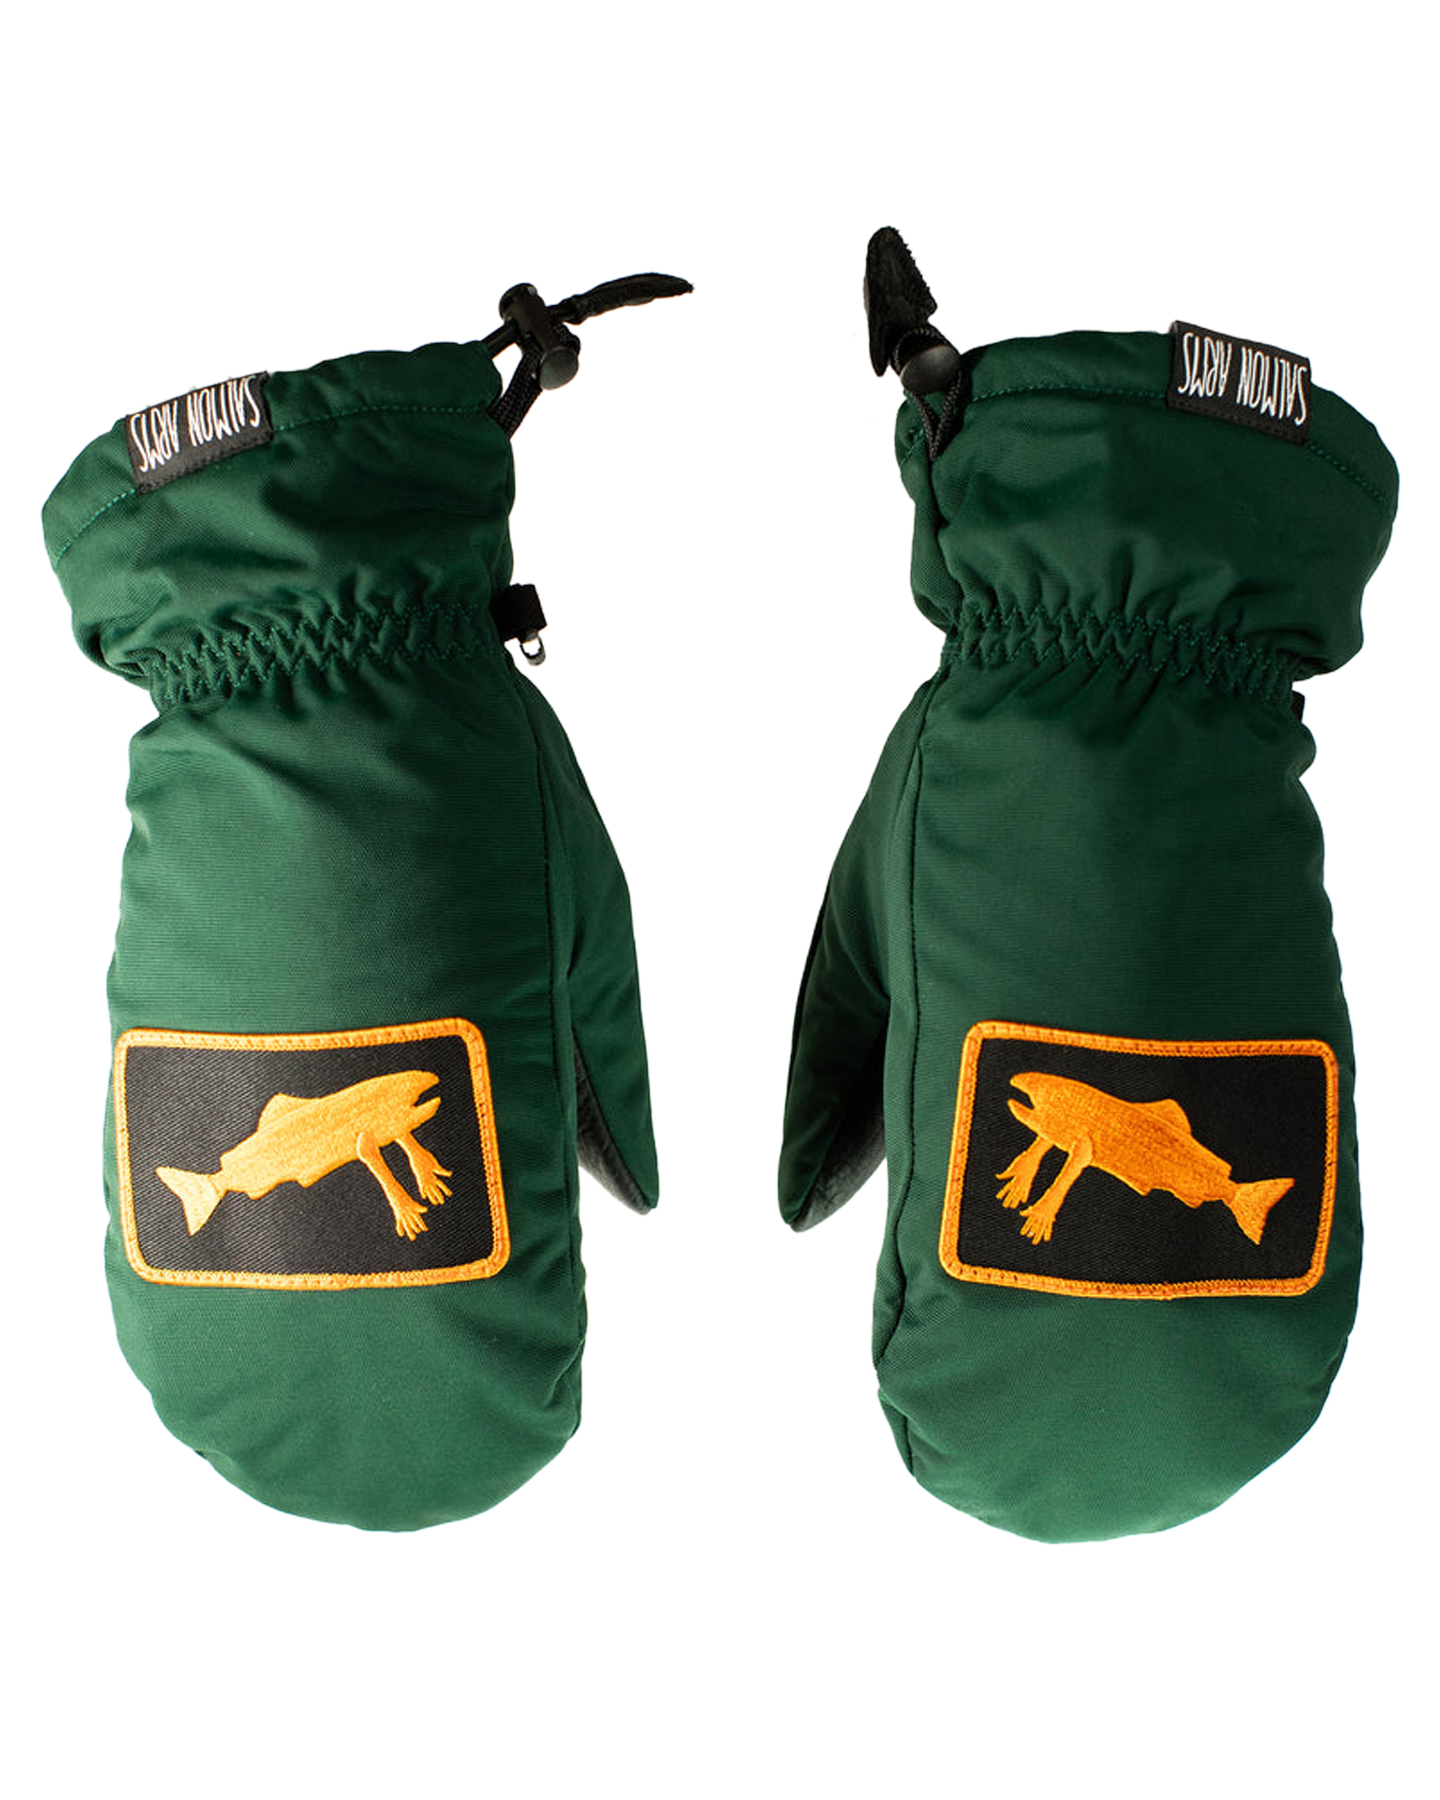 Salmon Arms Classic Snow Mitt - Logo Green/Orange Men's Snow Gloves & Mittens - Trojan Wake Ski Snow